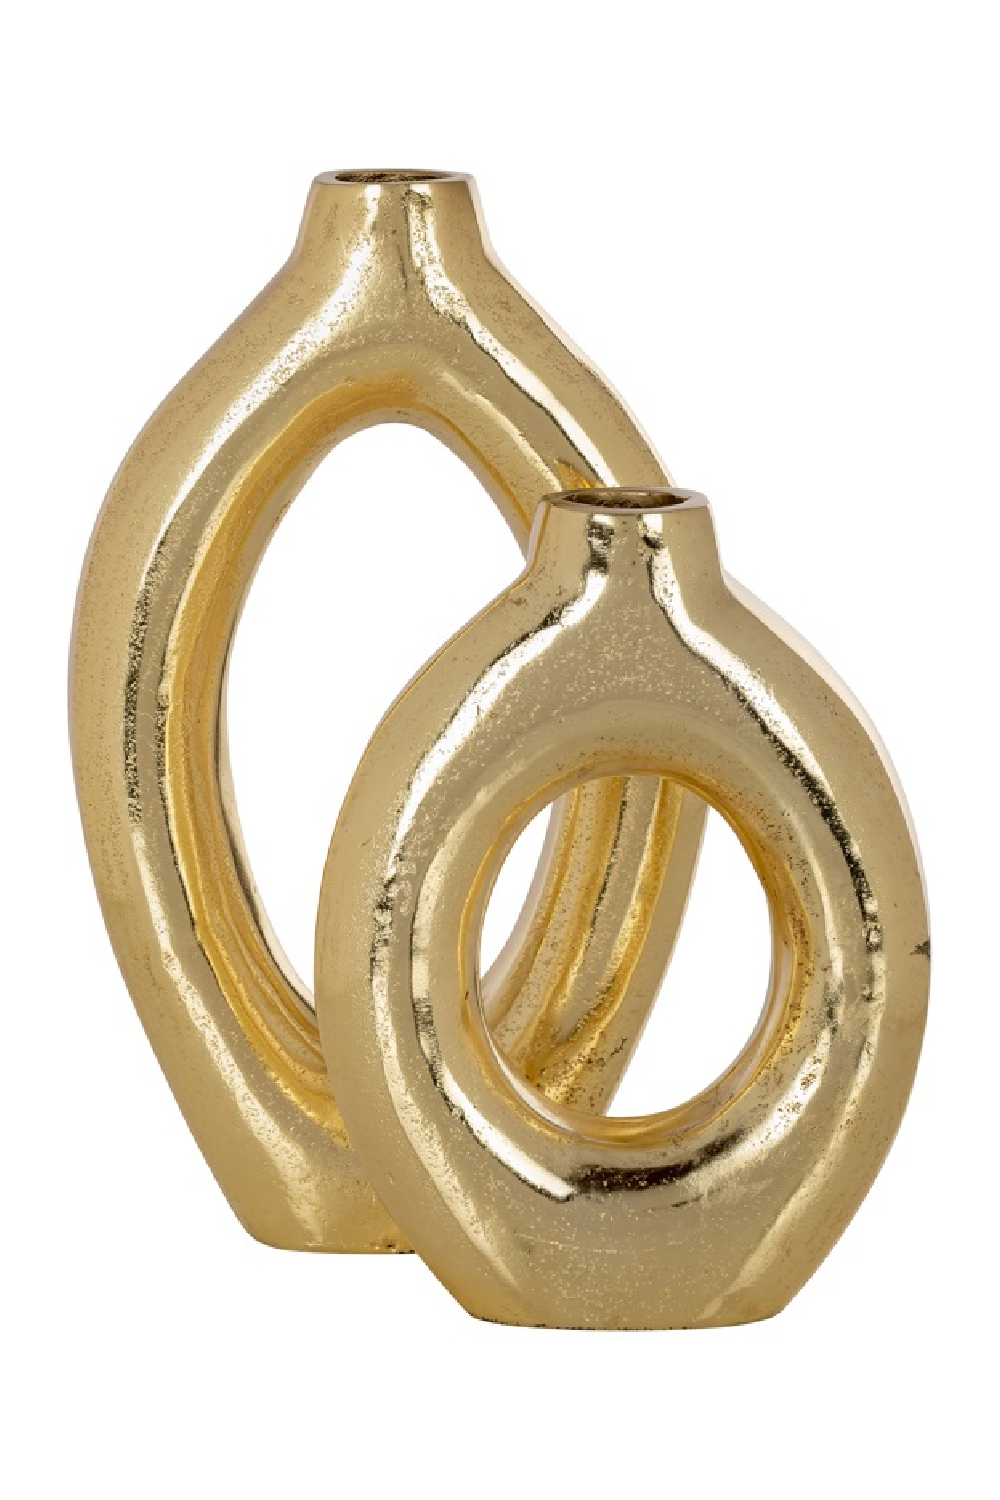 Gold Holed Modern Vase | OROA Caylie | Oroa.com